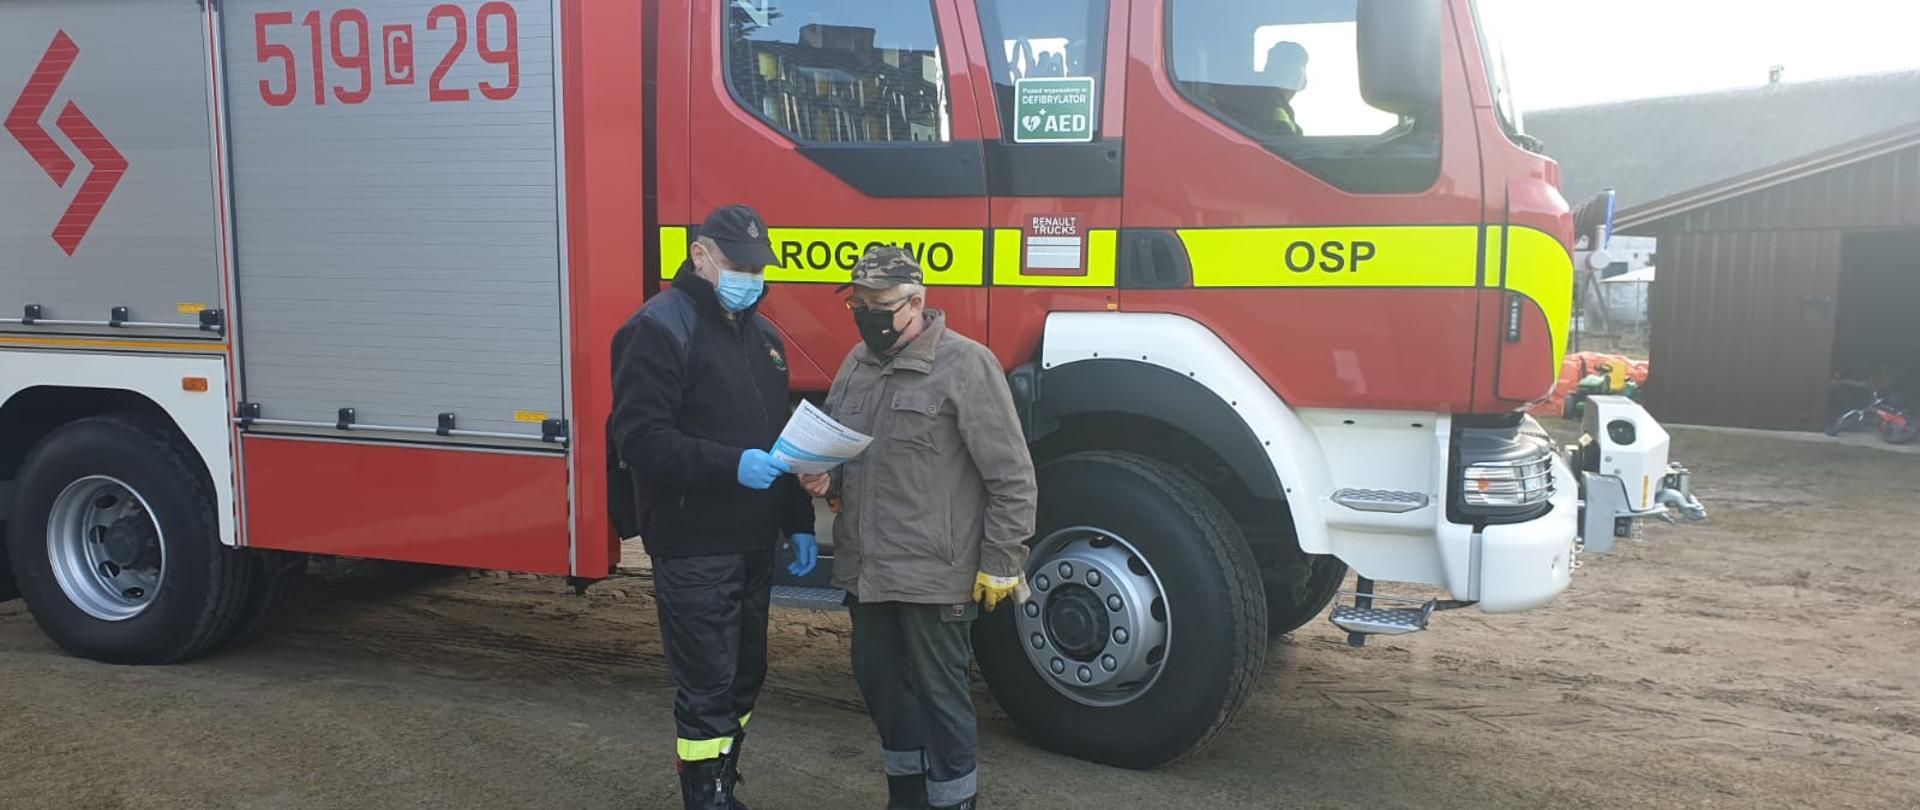 Zdjęcie przedstawia strażaka OSP, który wręcza mężczyźnie ulotkę dotyczącą szczepień przeciwko COVID-19. Na tle mężczyzn znajduje się samochód pożarniczy. Jest to prawa strona pojazdu. Na kabinie pojazdu znajduje się napis Rogowo OSP oraz numery operacyjne 519c29. Za kierownicą w pojeździe widać strażaka kierowcę. W oddali zdjęcia widać budynek gospodarczy. 